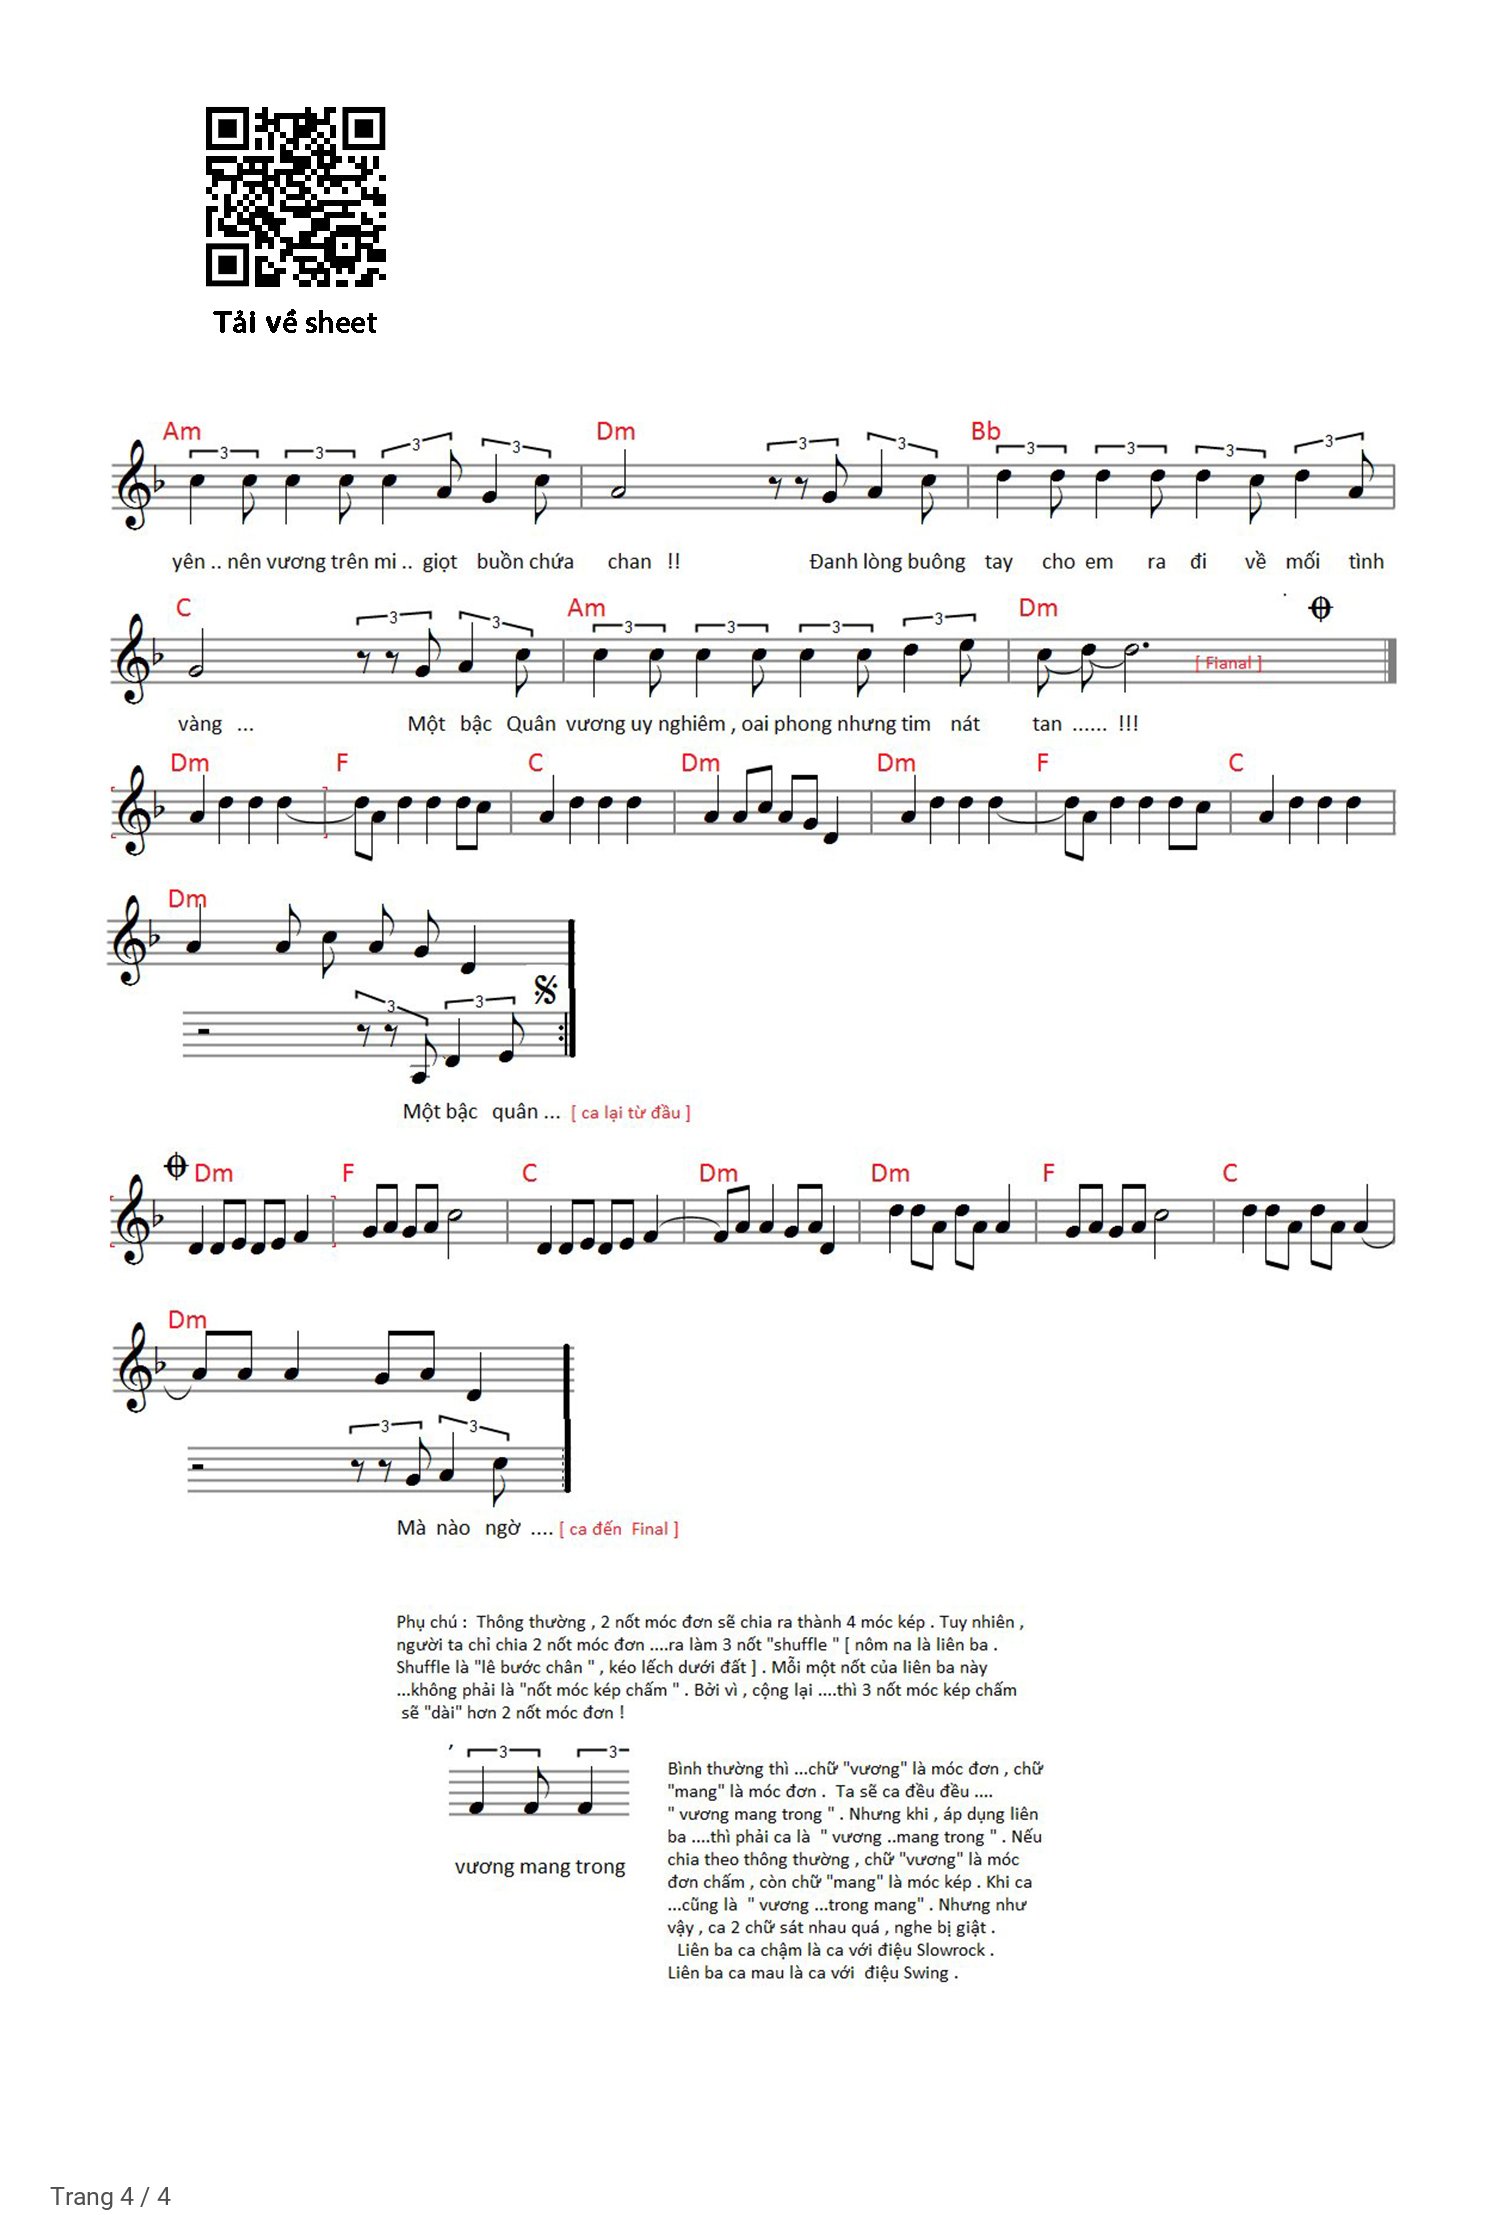 Trang 4 của Sheet nhạc PDF Piano bài hát Đế vương - Đình Dũng